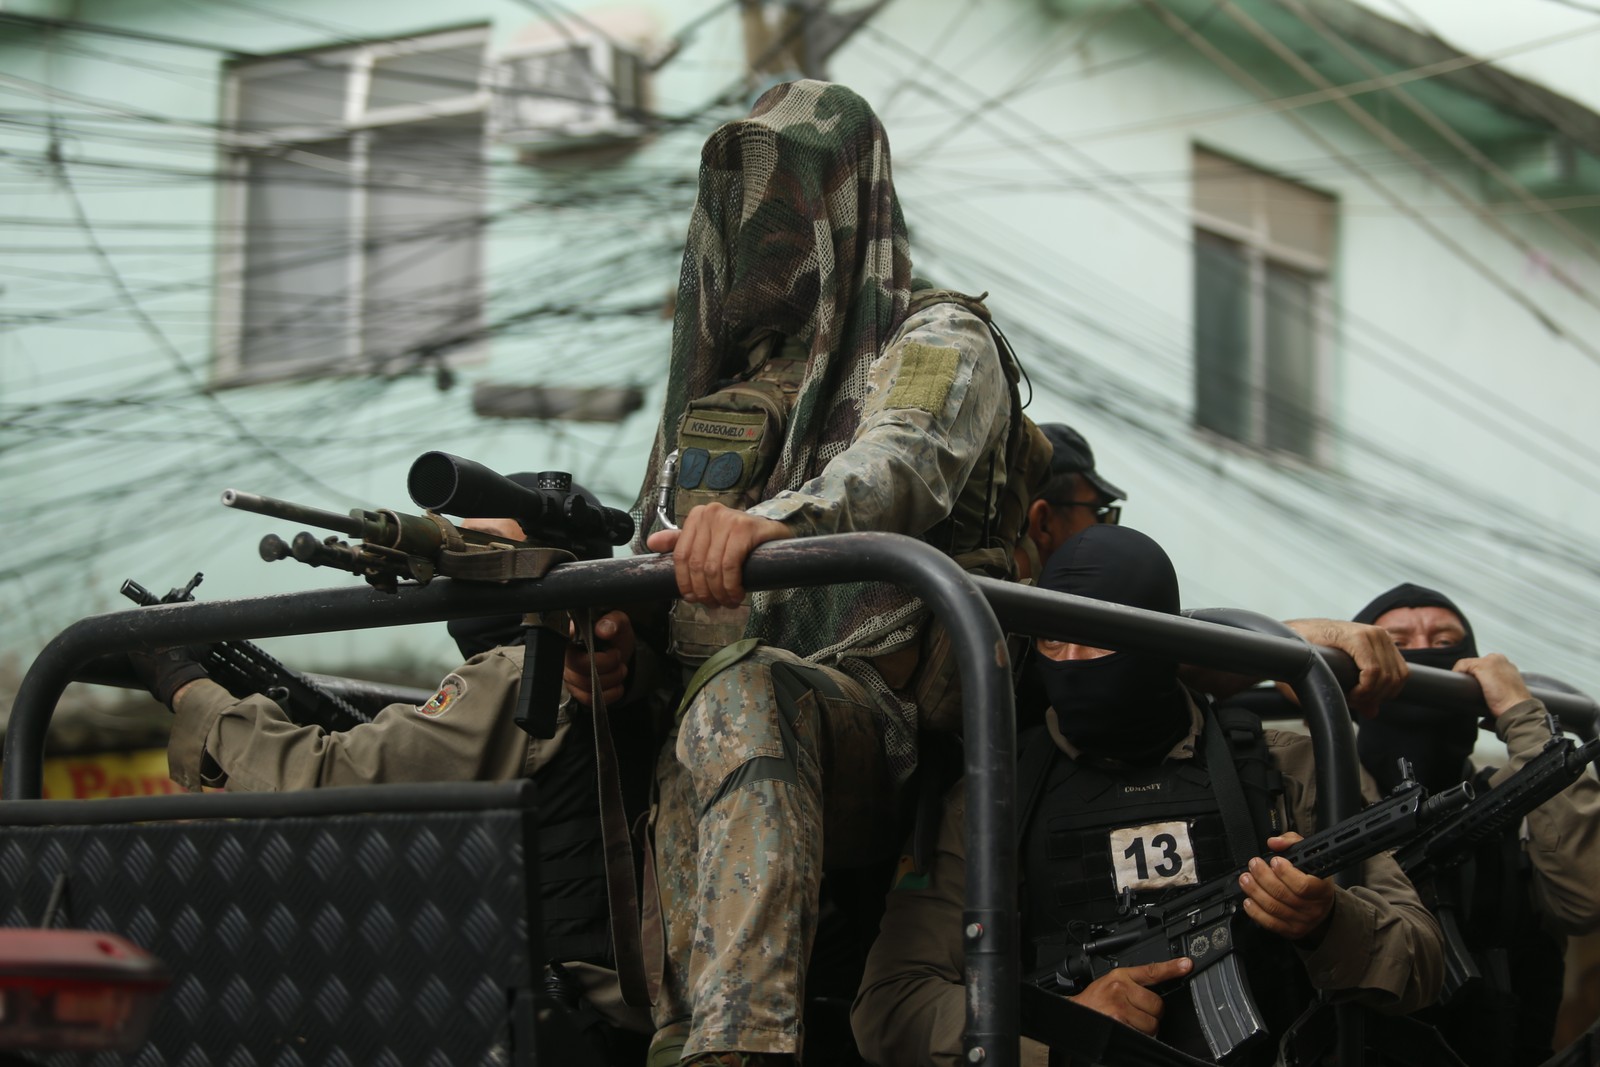 Policial durante segunda fase da Operação Maré, na Vila do João — Foto: Fabiano Rocha/Agência O Globo